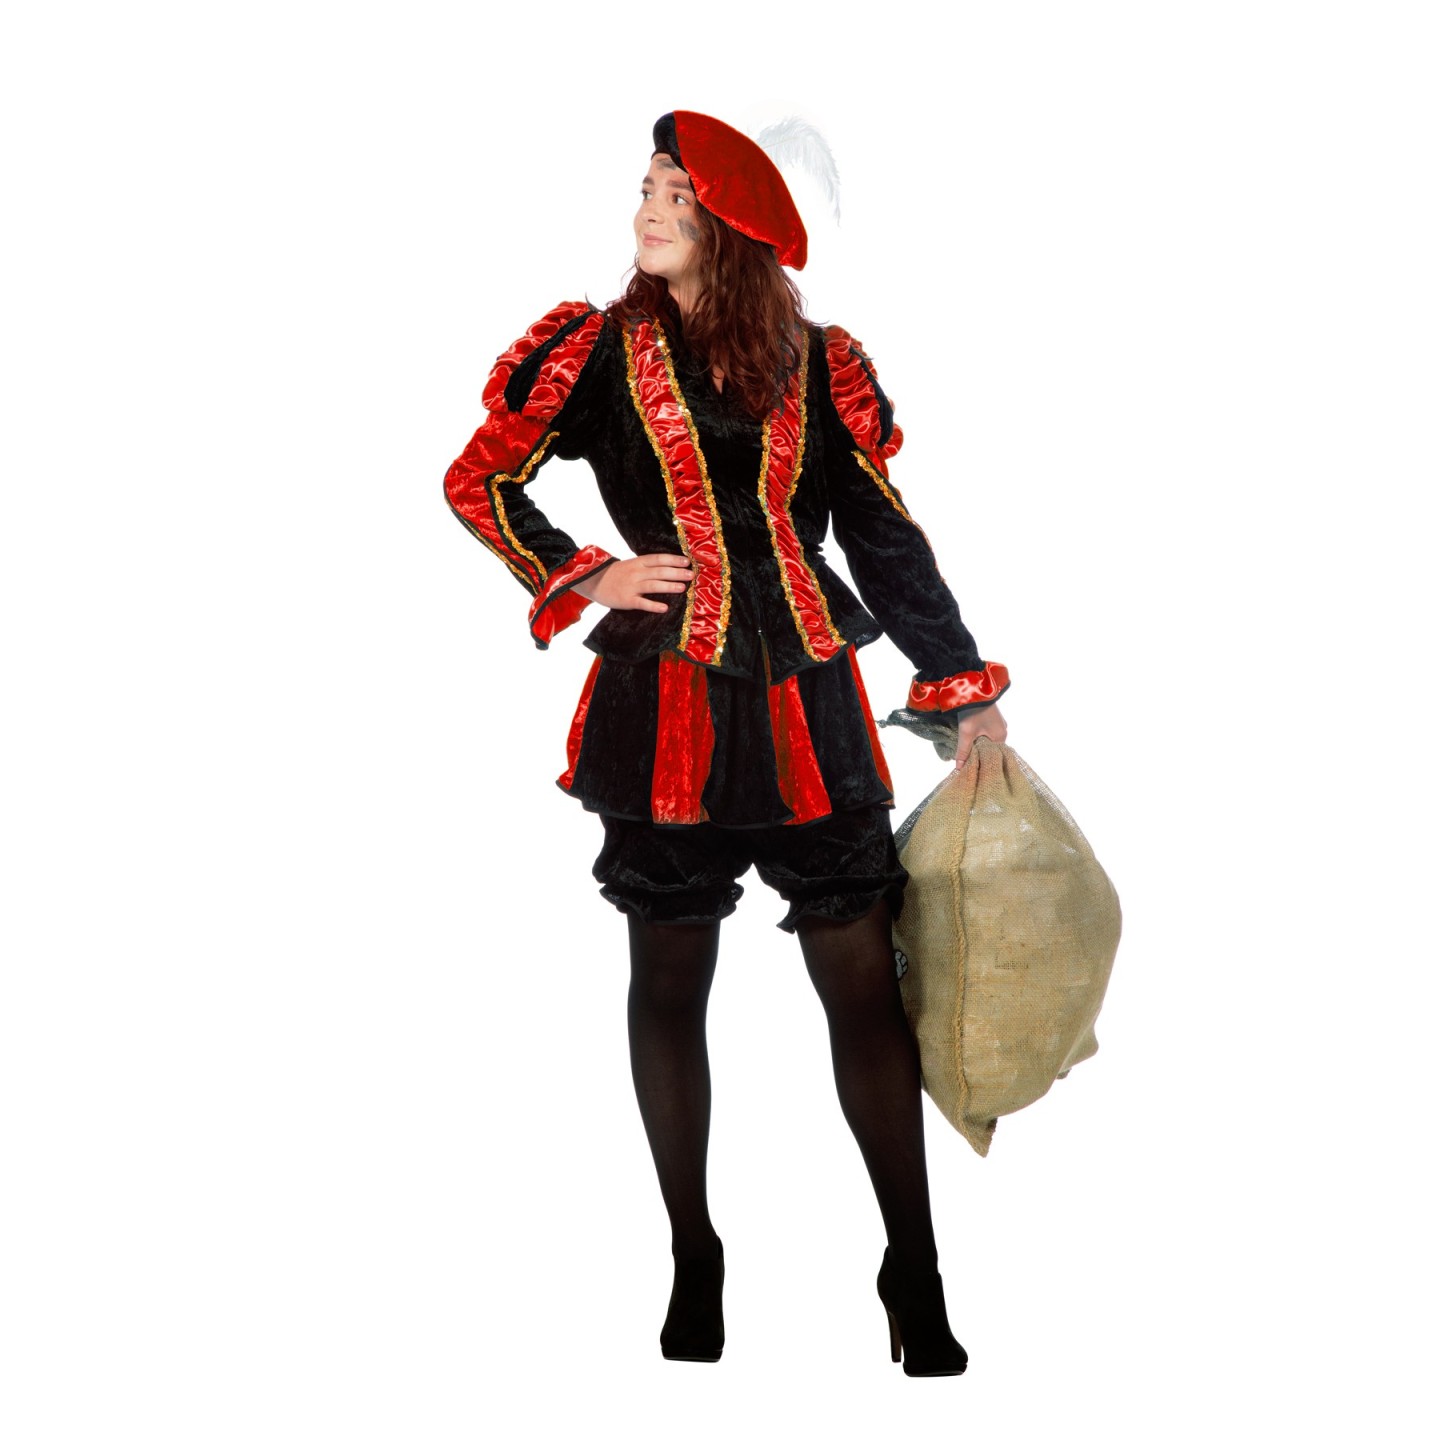 zeemijl Lift Mount Bank Zwarte pietenpak - dames Piet kostuum kopen ?| Jokershop.be